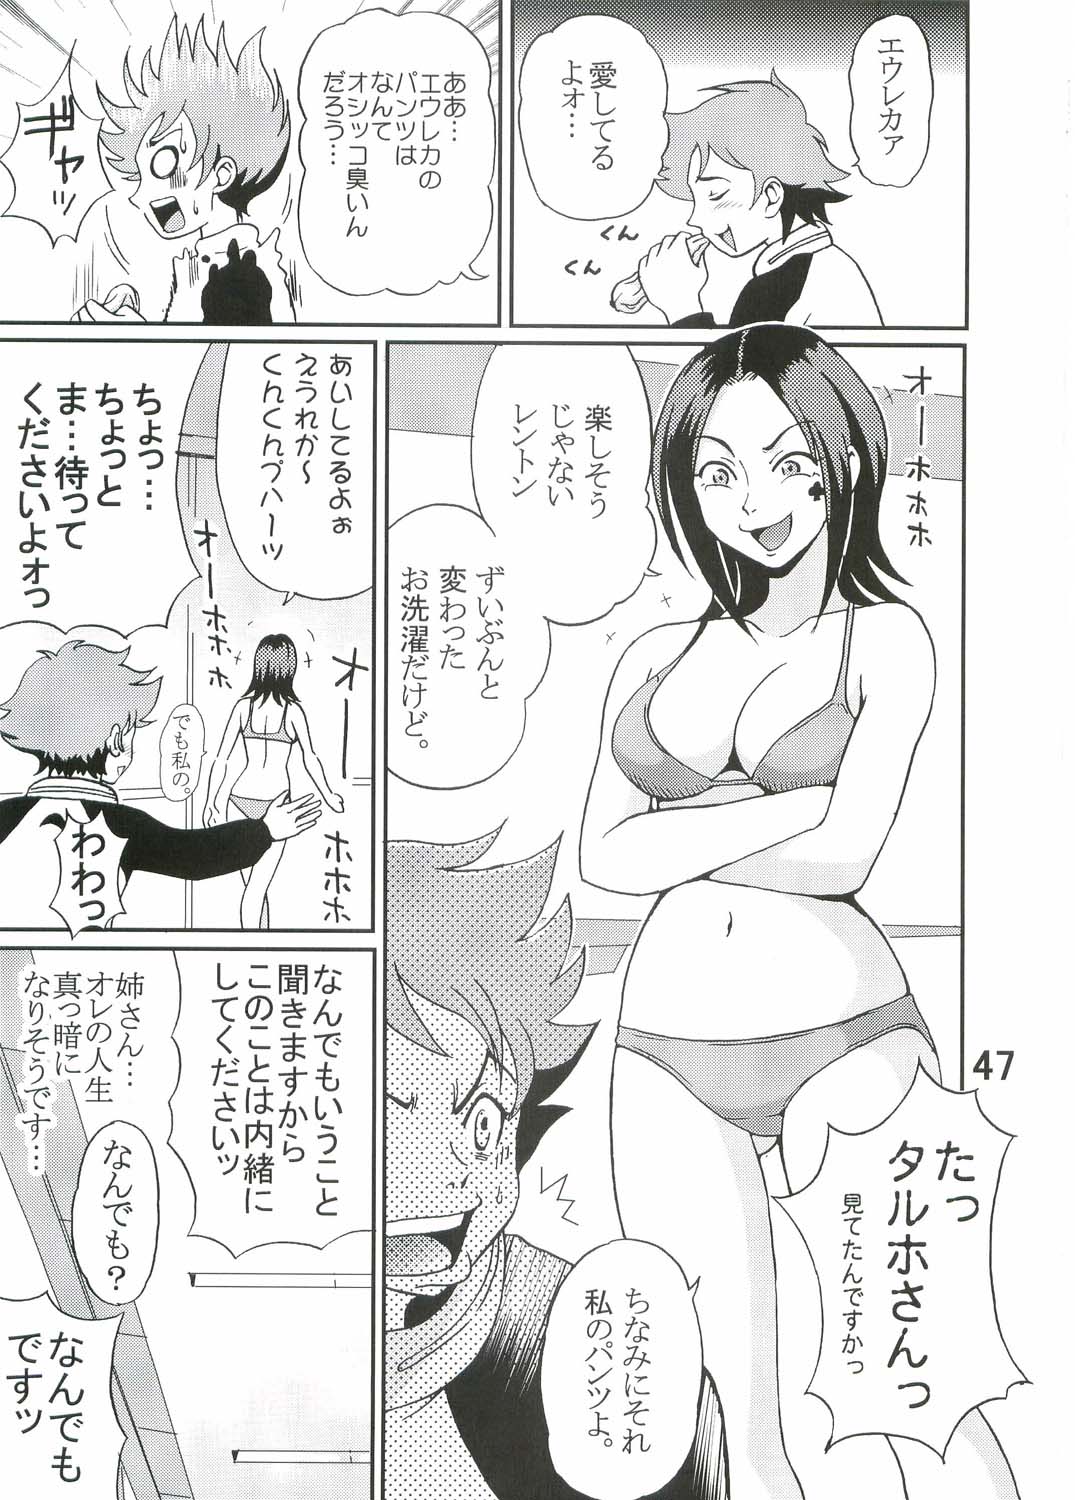 [St. Rio (Kitty, Kouenji Rei)] Ura ray-out (Eureka seveN) page 48 full